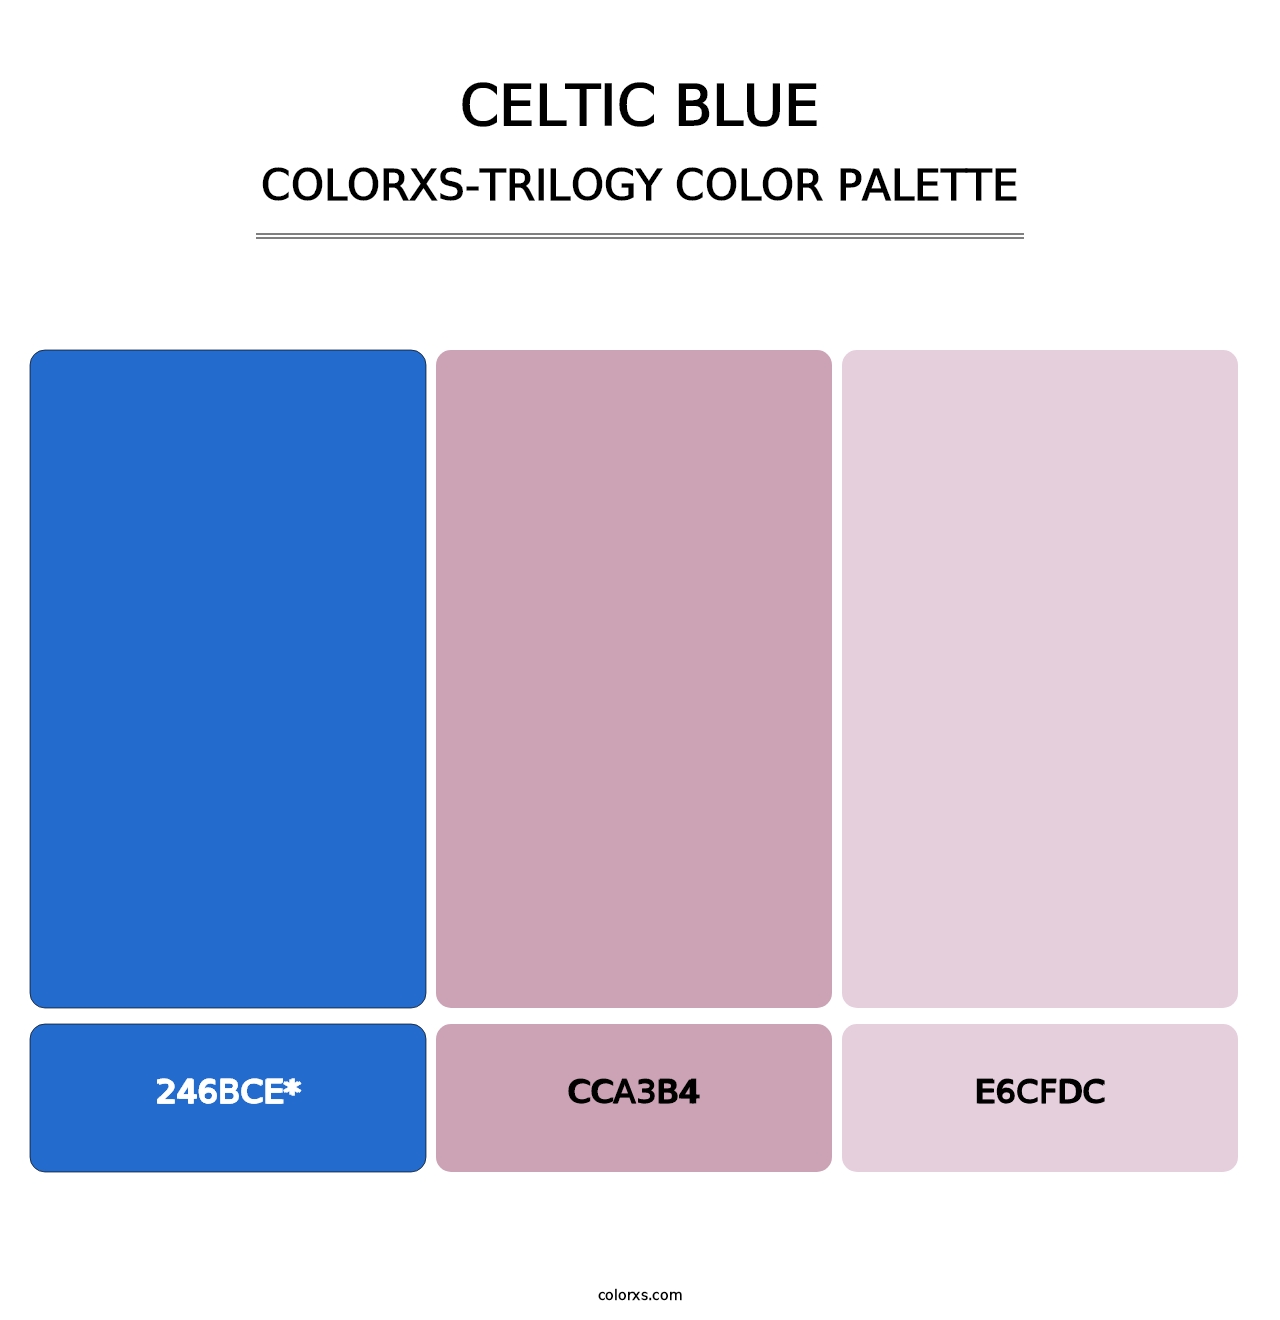 Celtic Blue - Colorxs Trilogy Palette